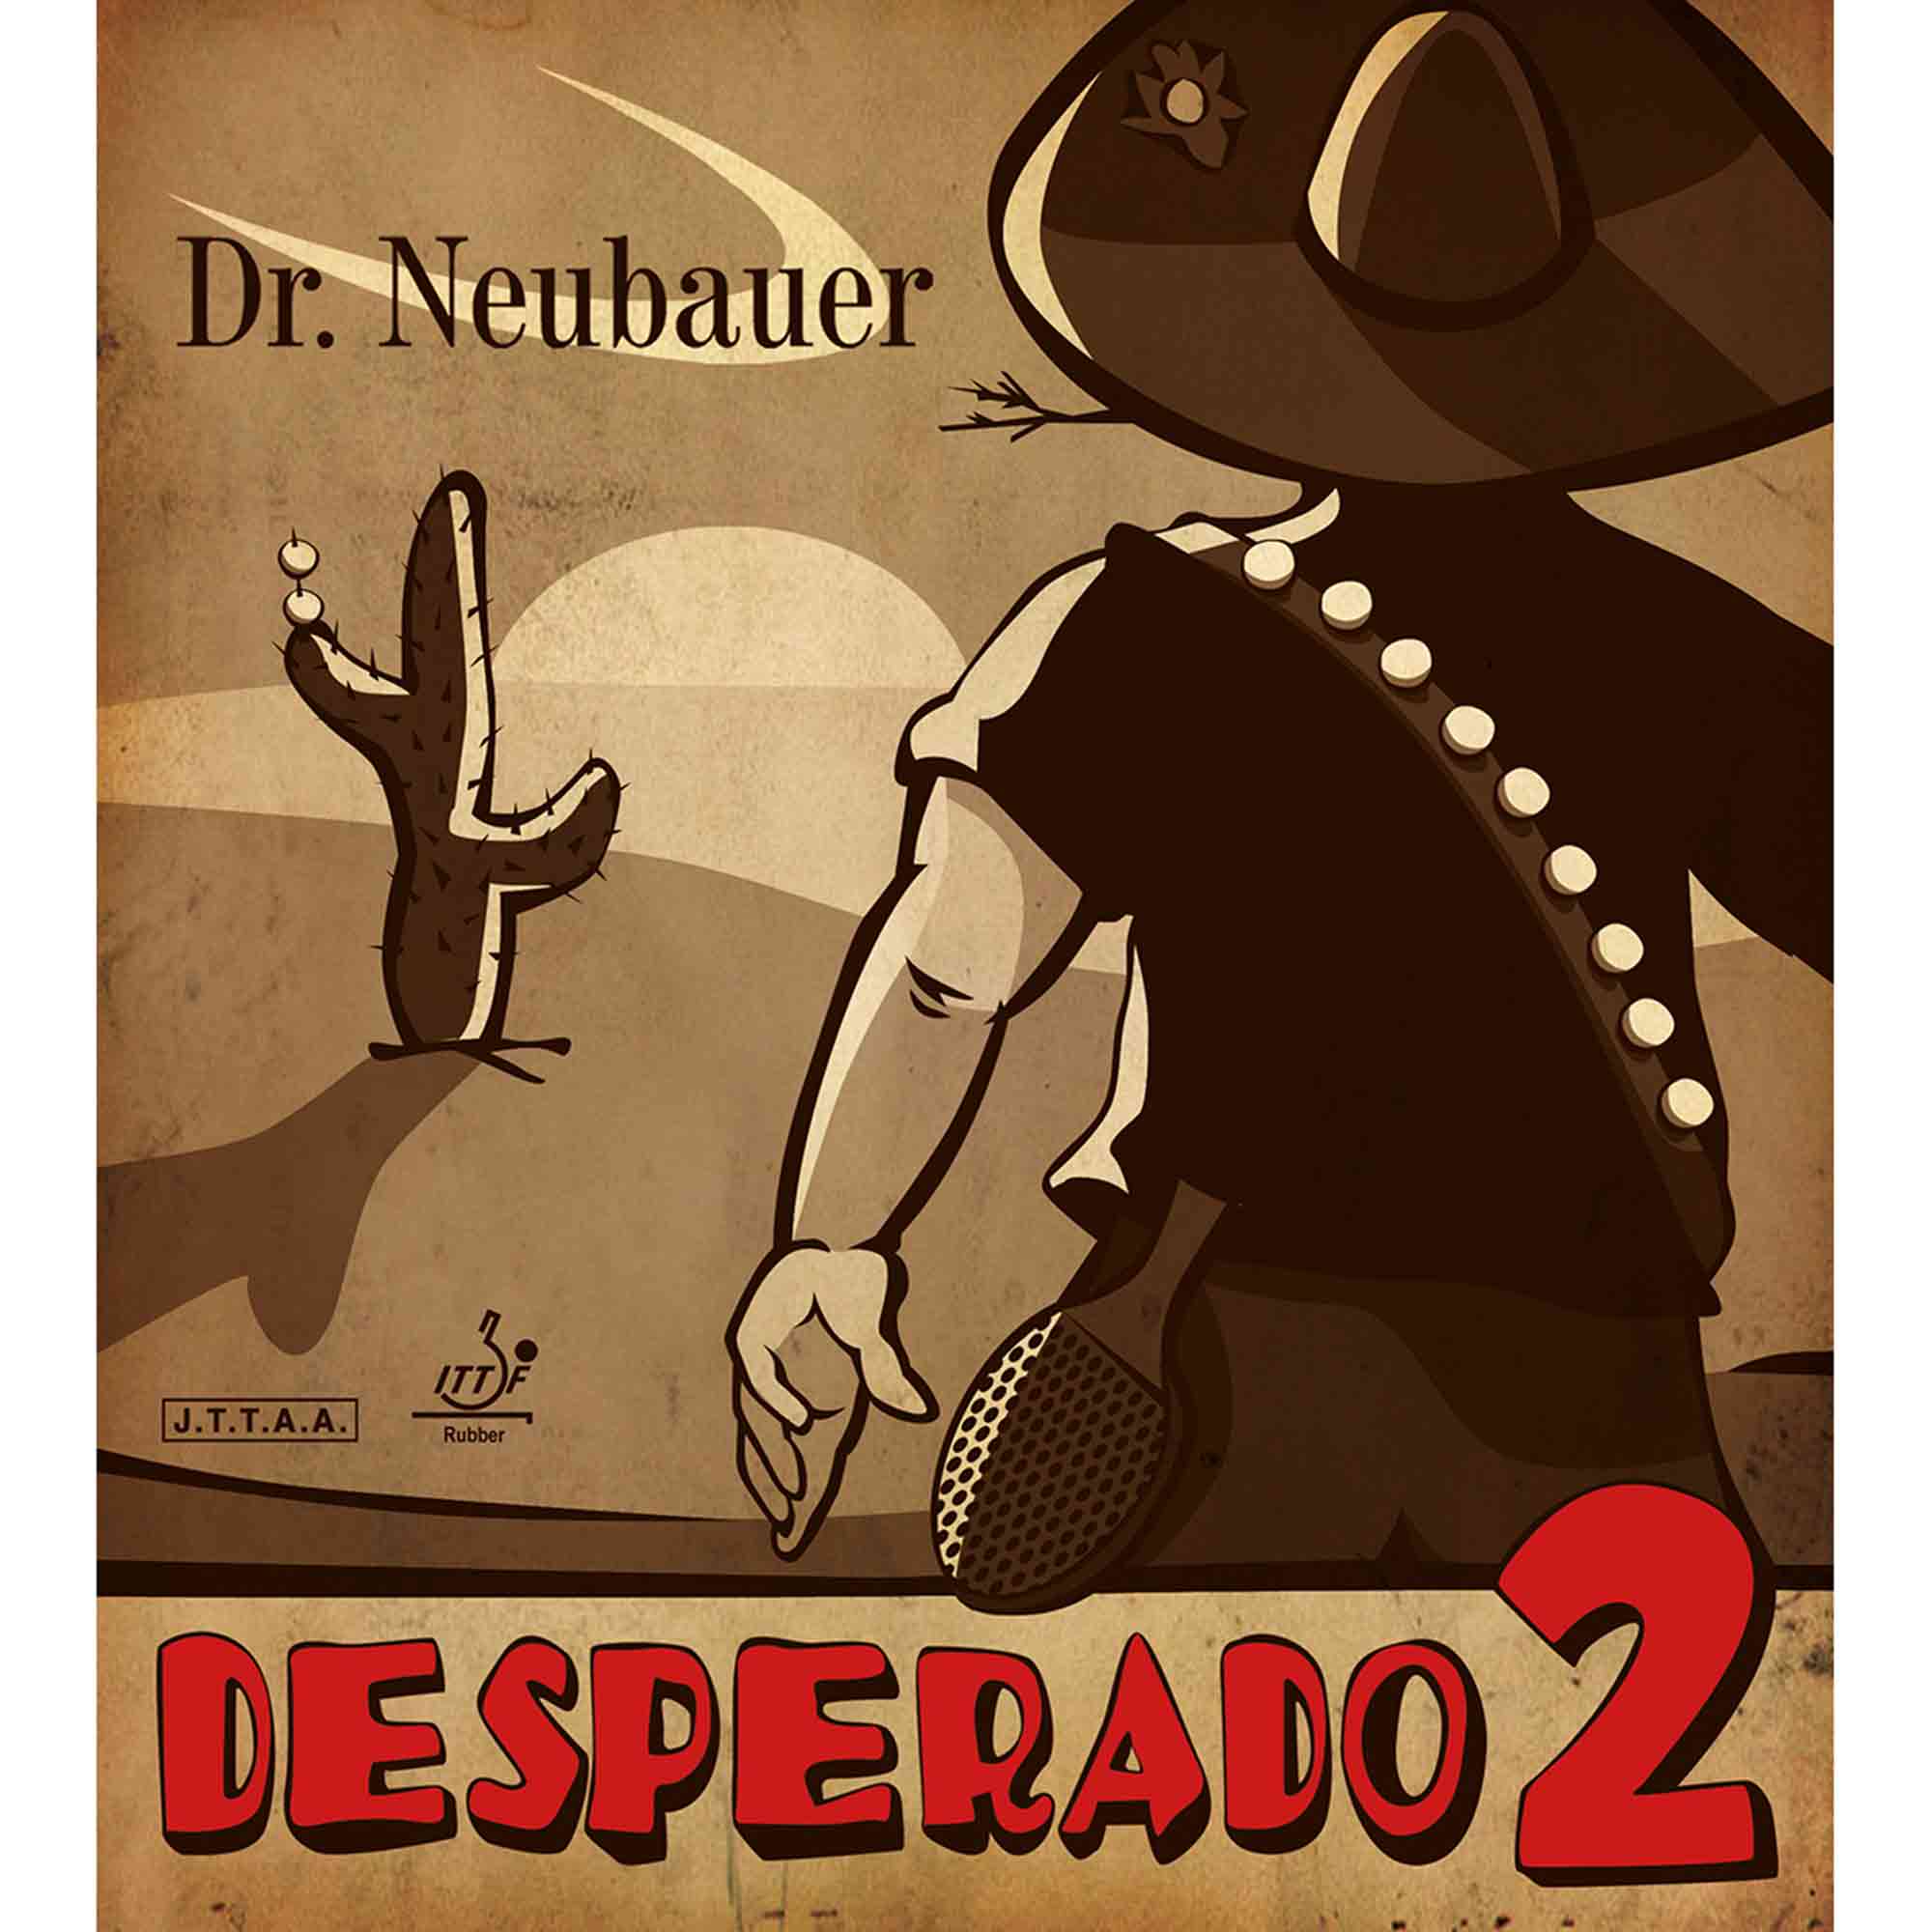 Dr. Neubauer Rubber Desperado 2